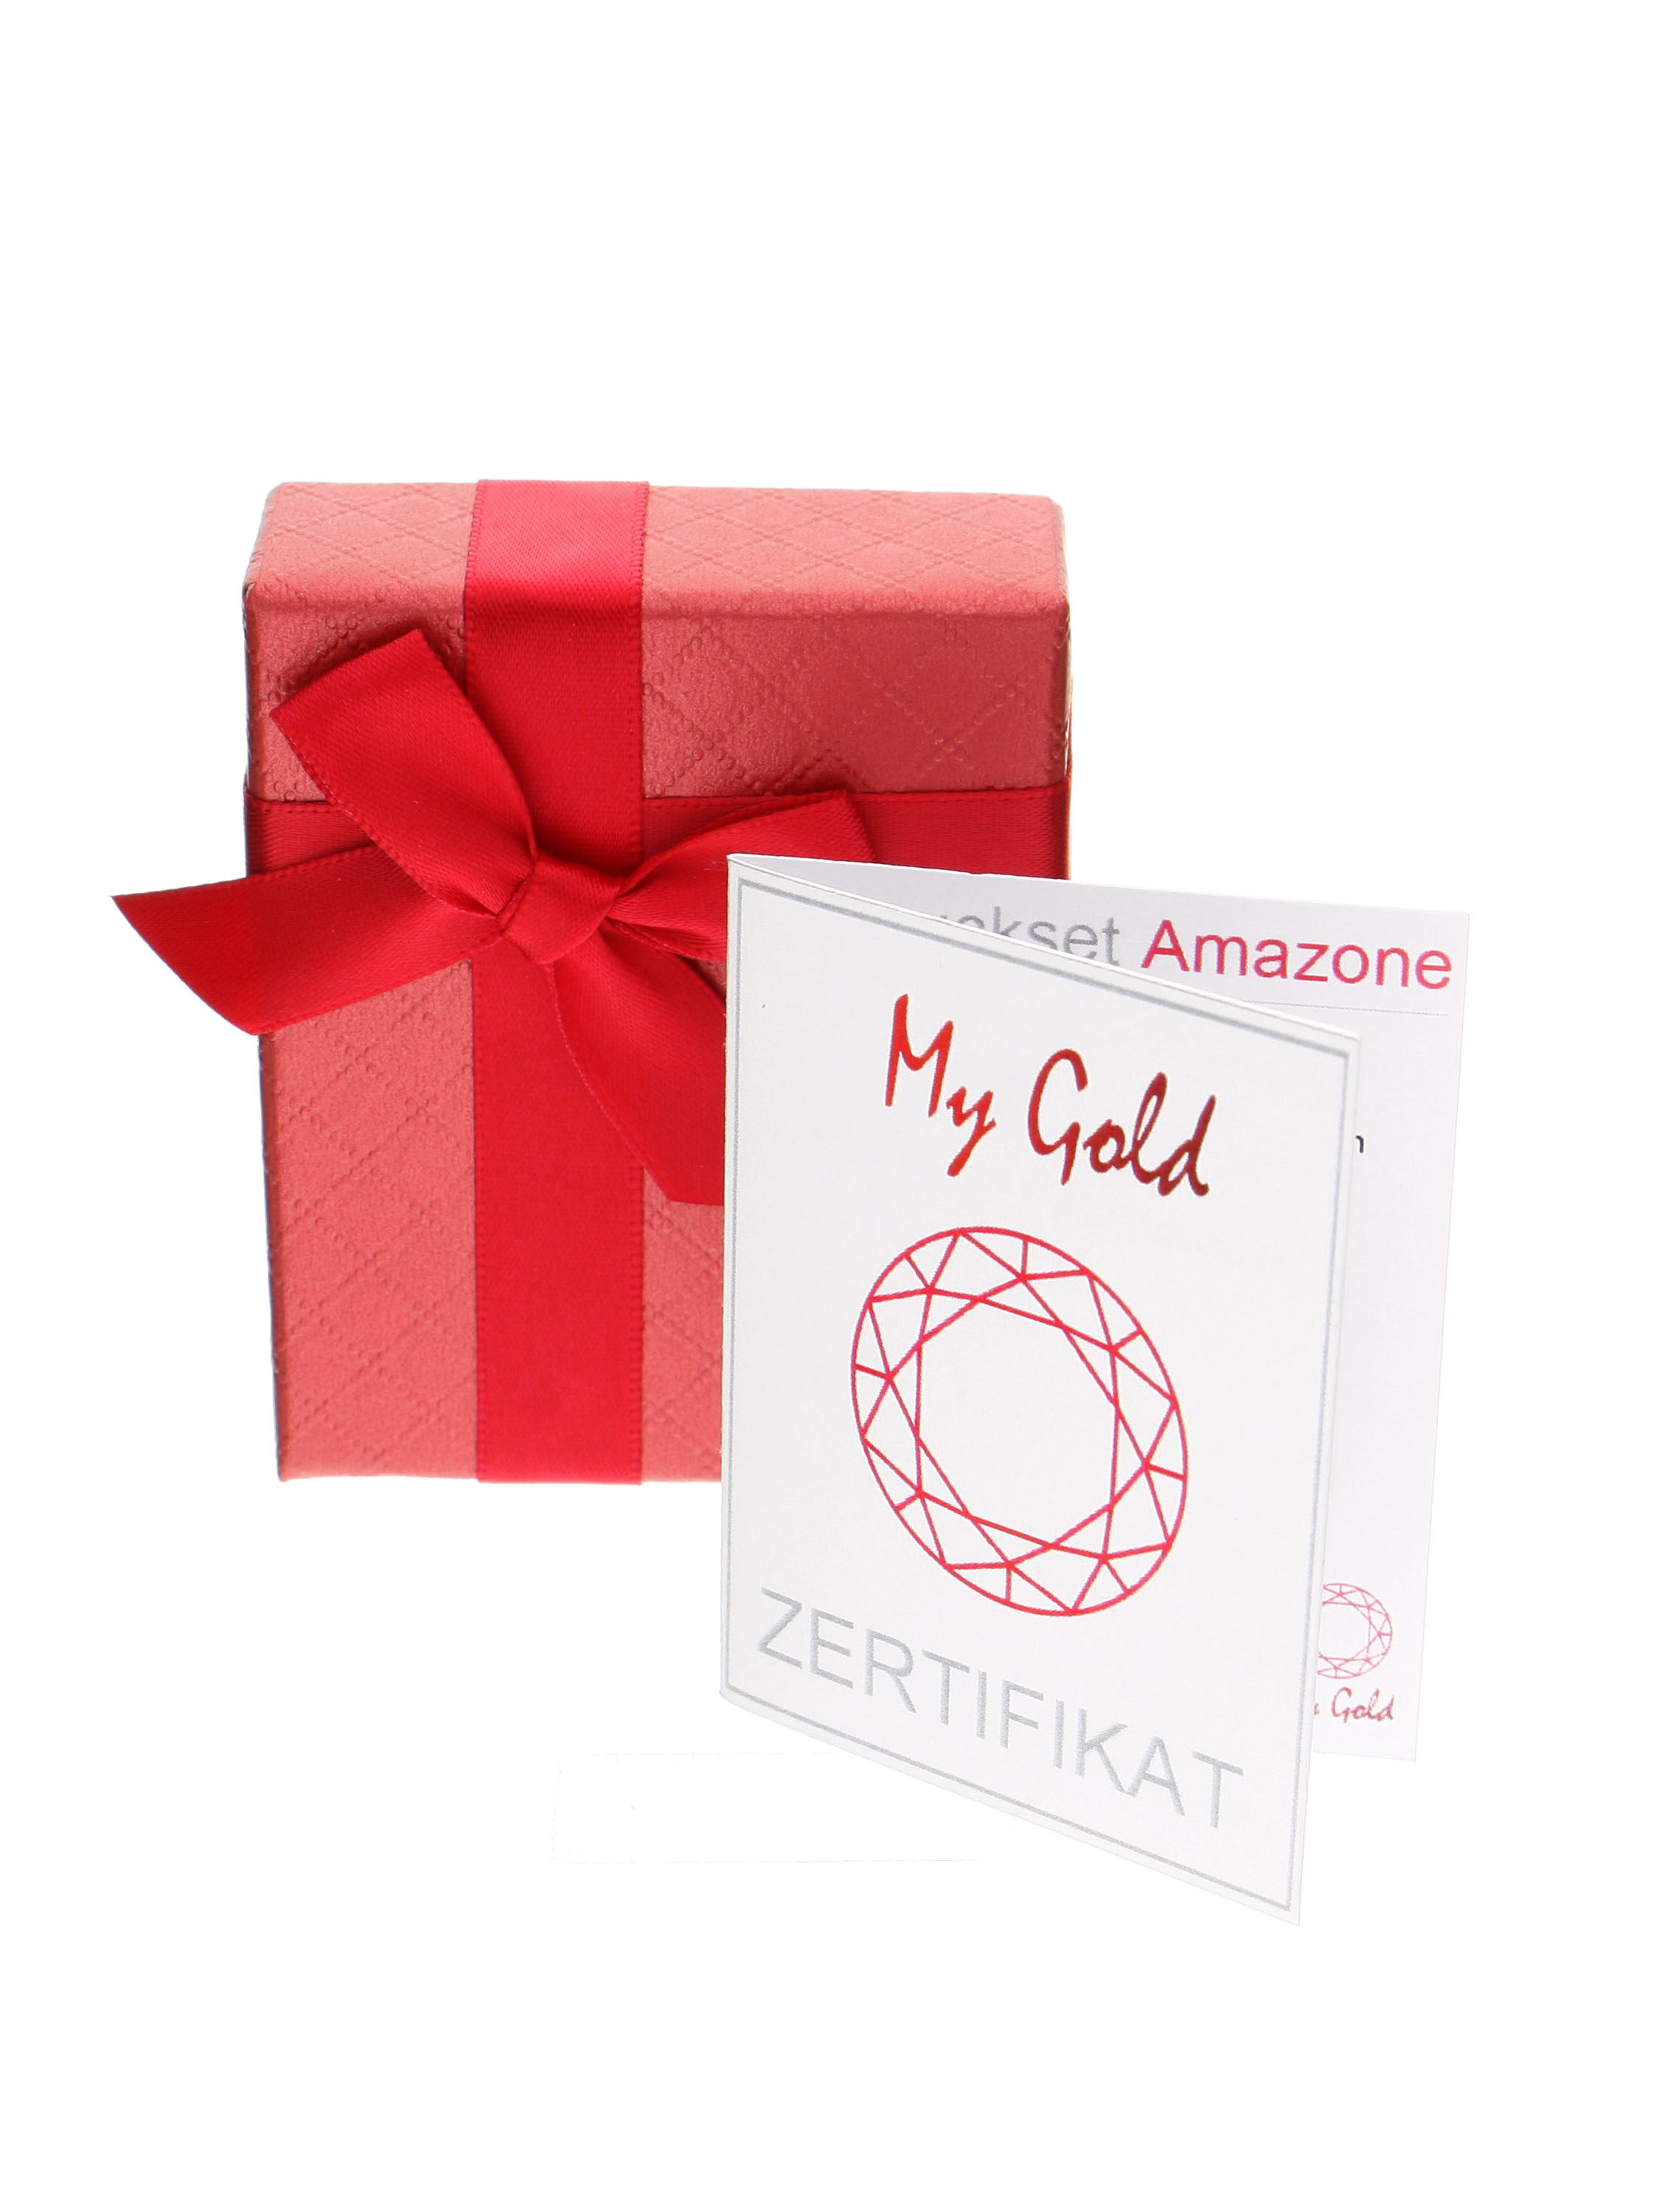 Rote Geschenkschachtel mit schöner Satinschleife und Echtheitszertifikat für das rote Amazone Set | Verpackung